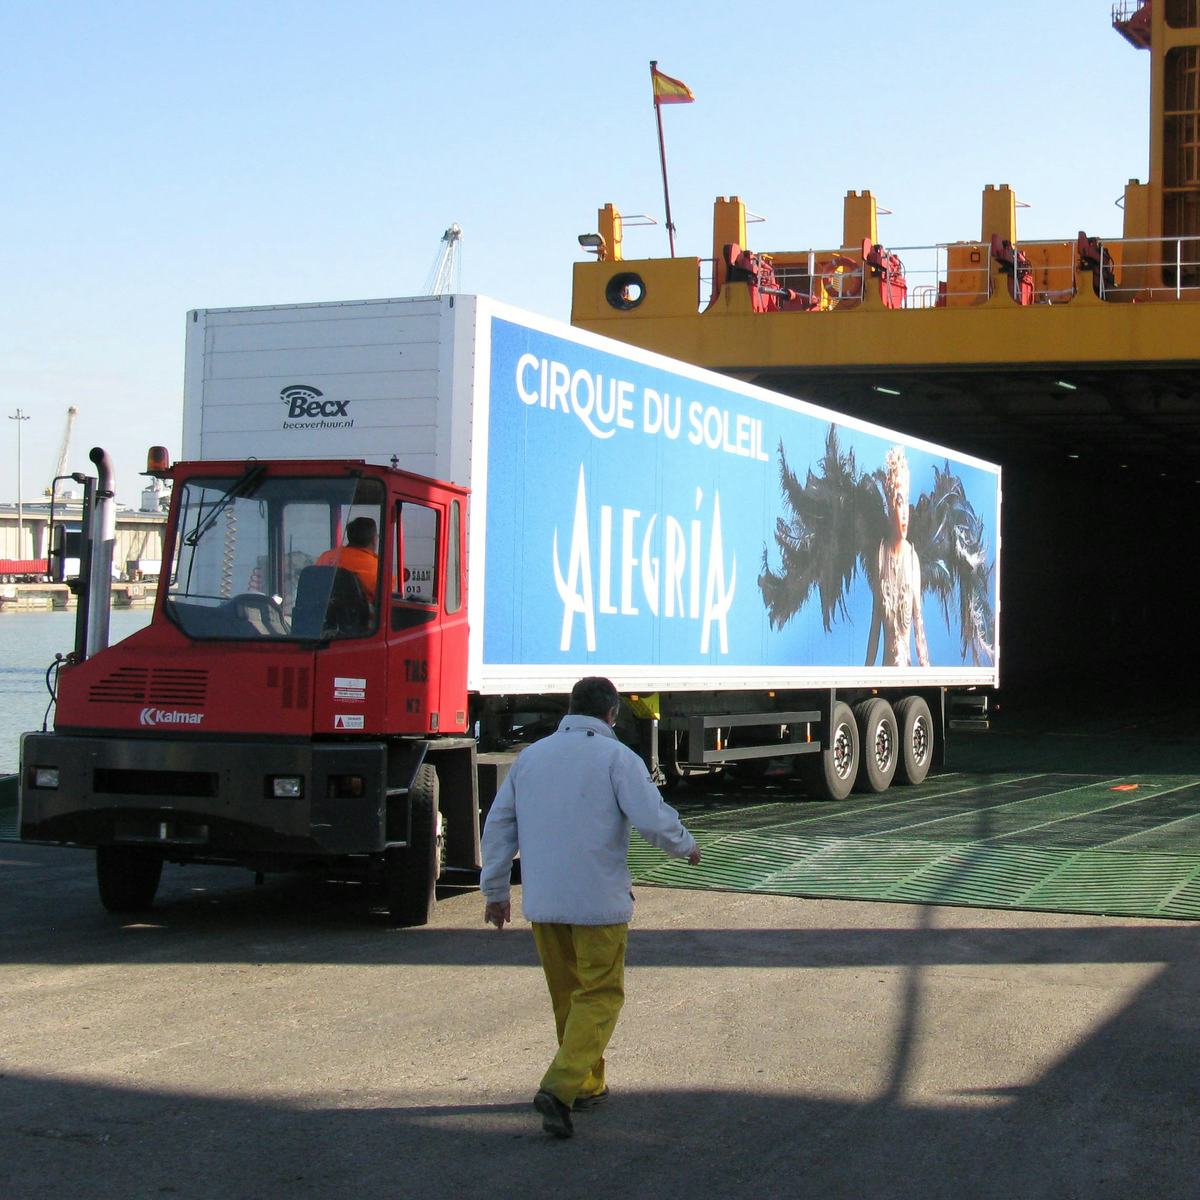 Saan vervoert 'Cirque du Soleil' show naar Tenerife